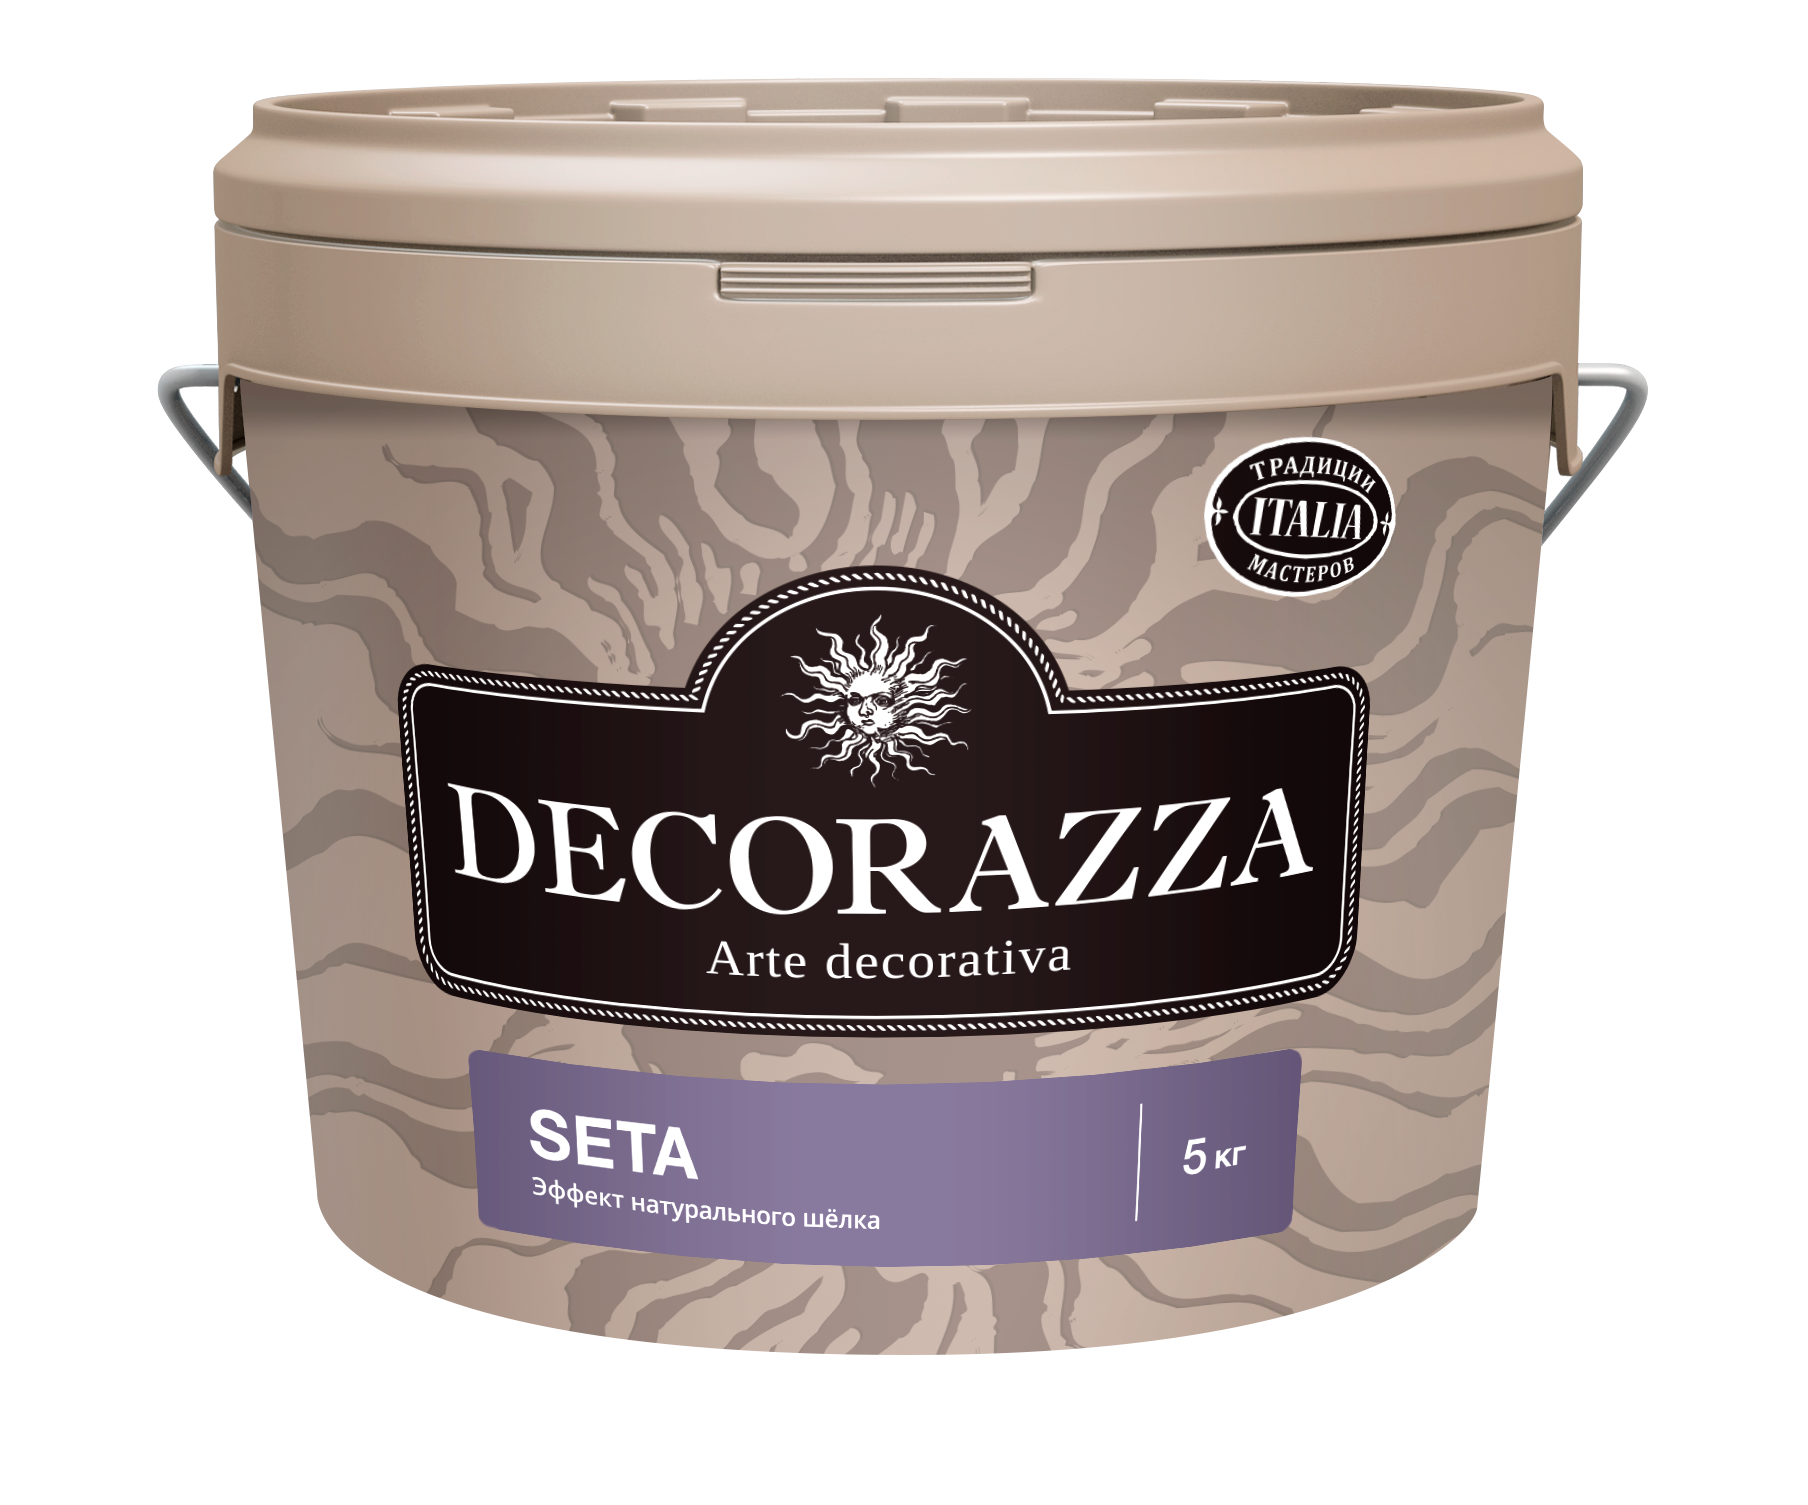 Декоративная штукатурка Decorazza Seta Argento ST 001, серебро, 5 кг декоративная штукатурка decorazza art beton ab 001 4 кг